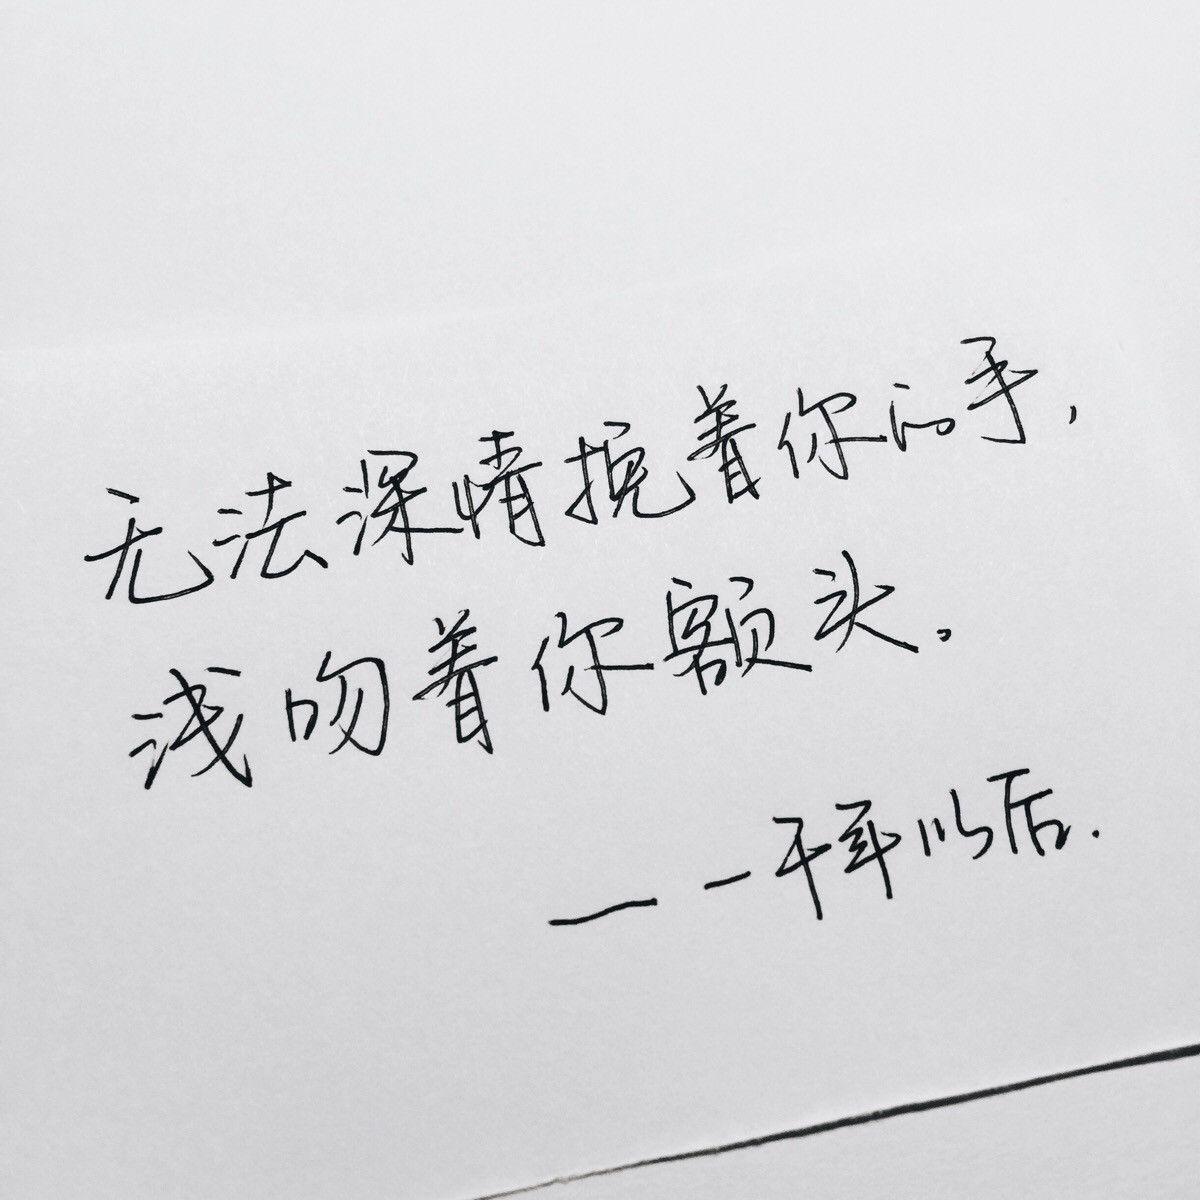 手写 文字 歌词 句子 jj林俊杰 手写by@sun了个晒